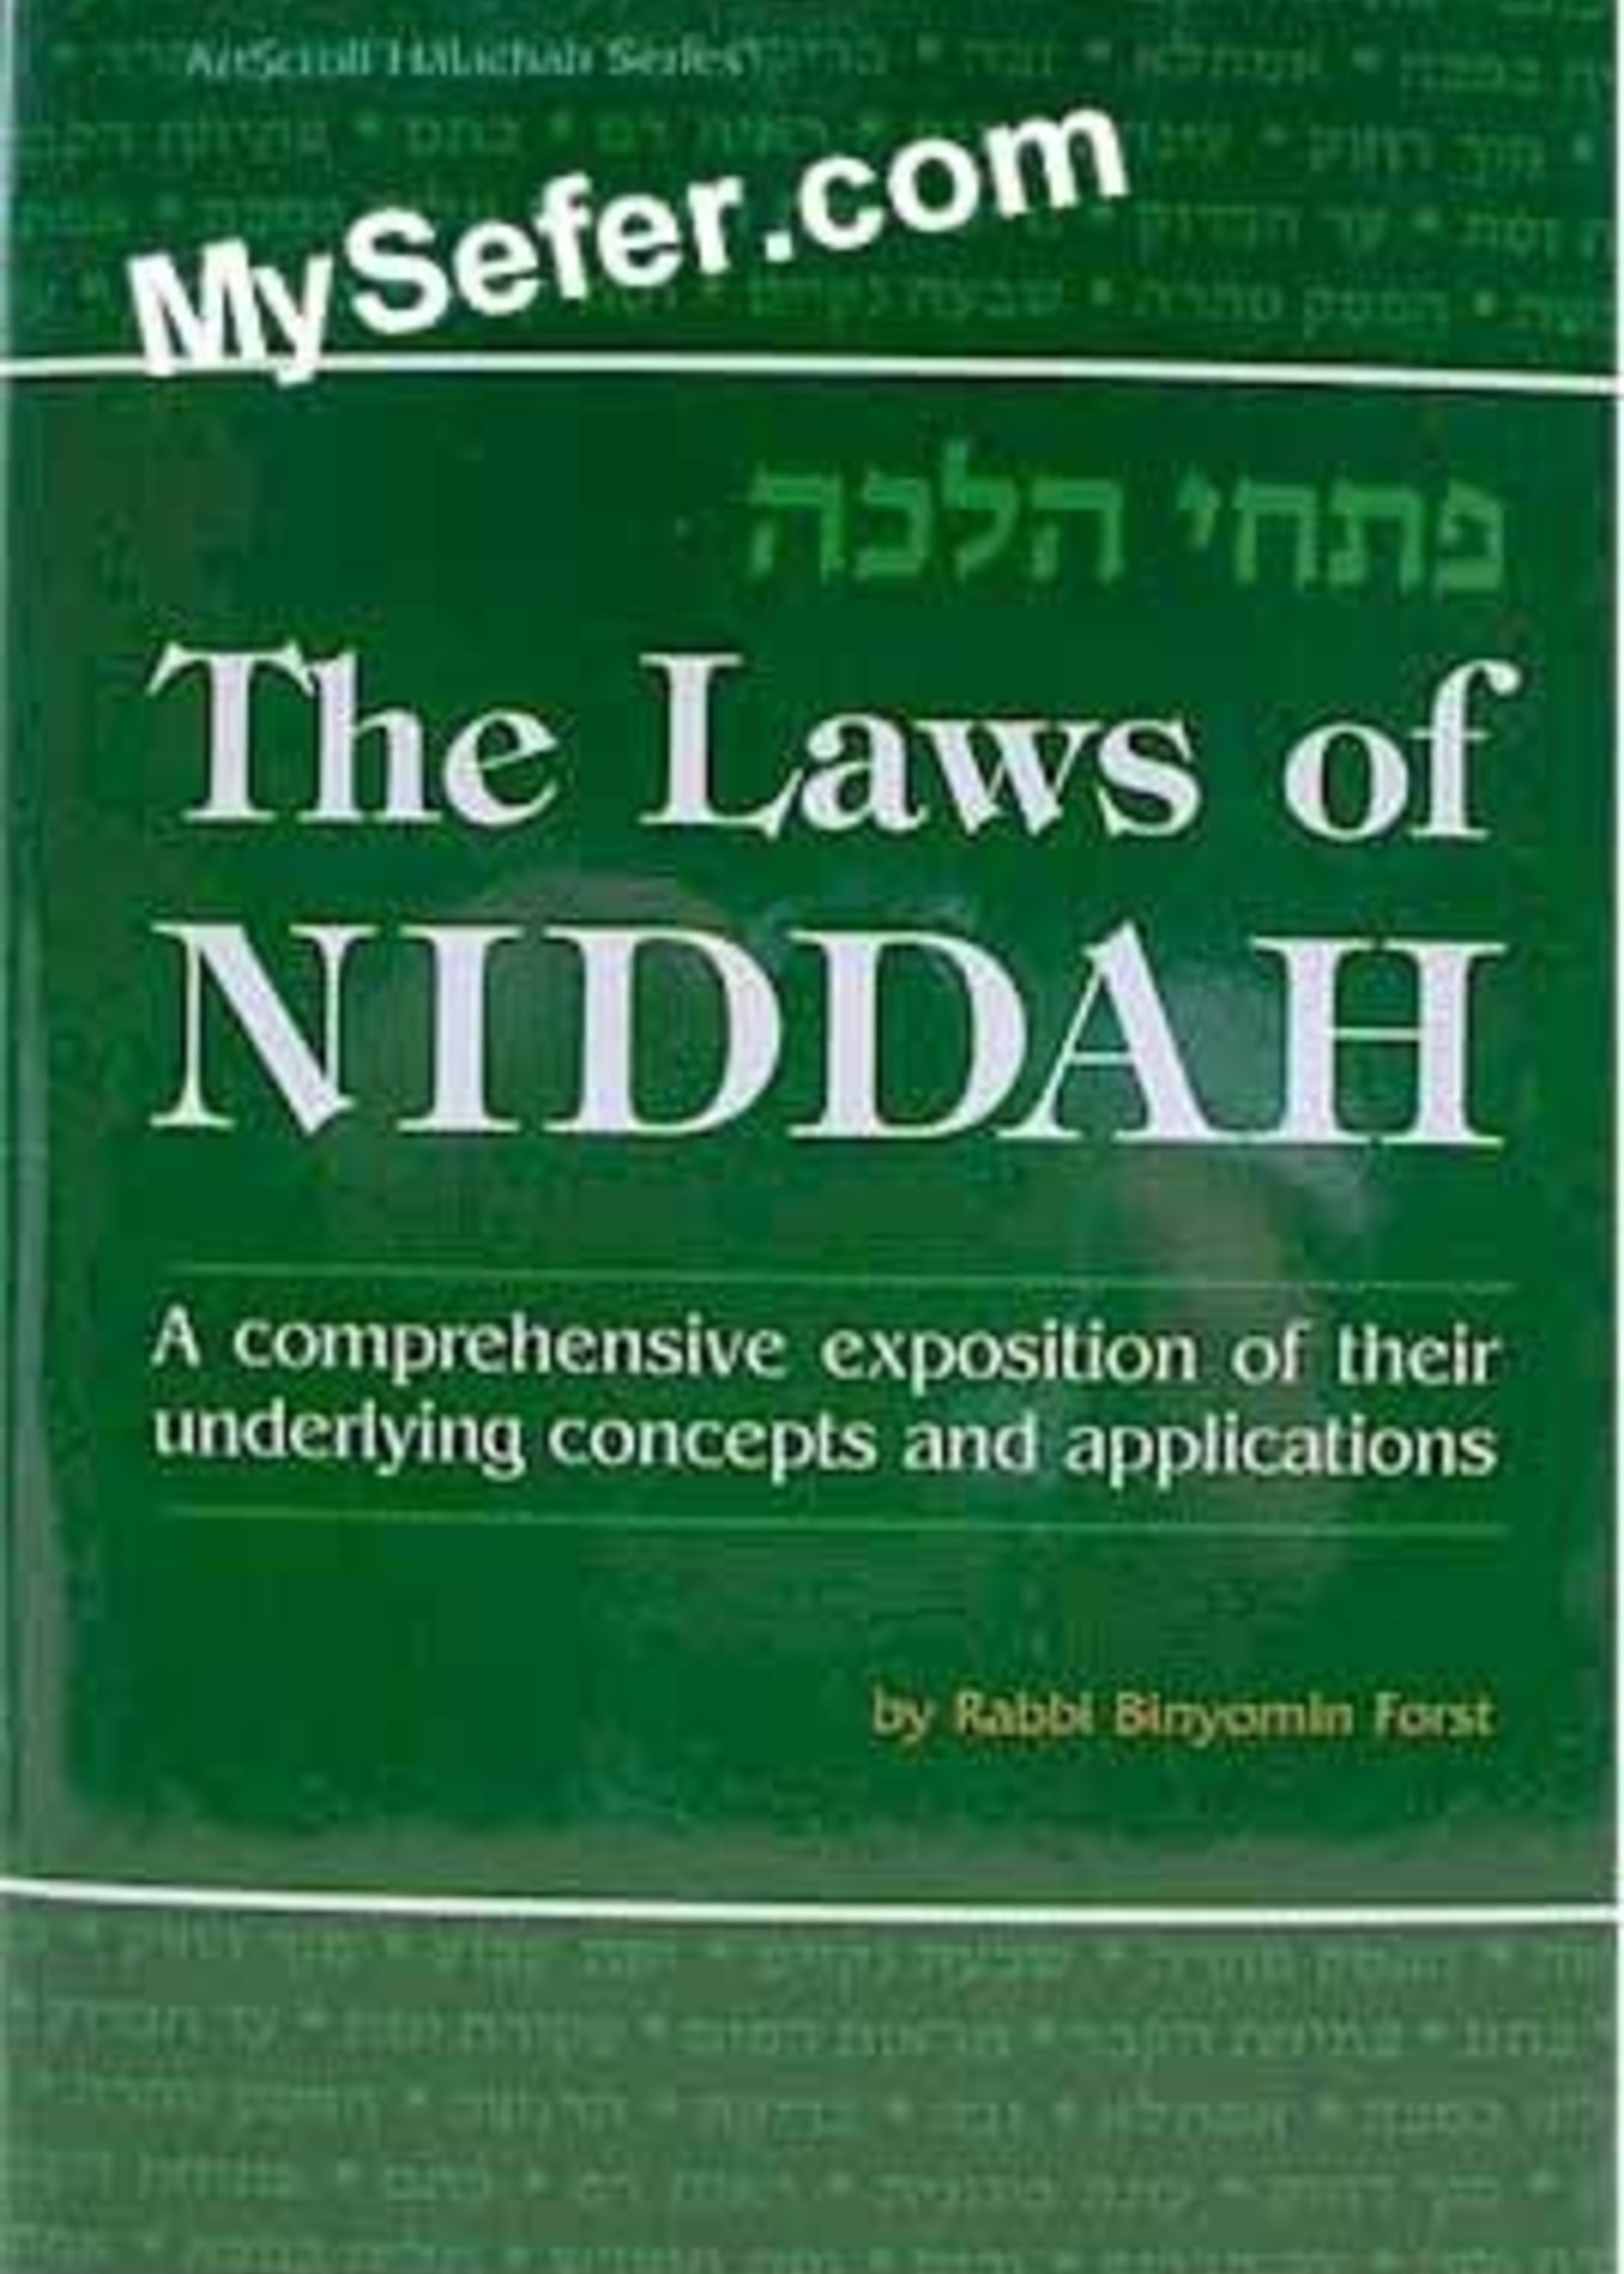 The Laws Of Niddah - Volume 1 (Rabbi Forst)